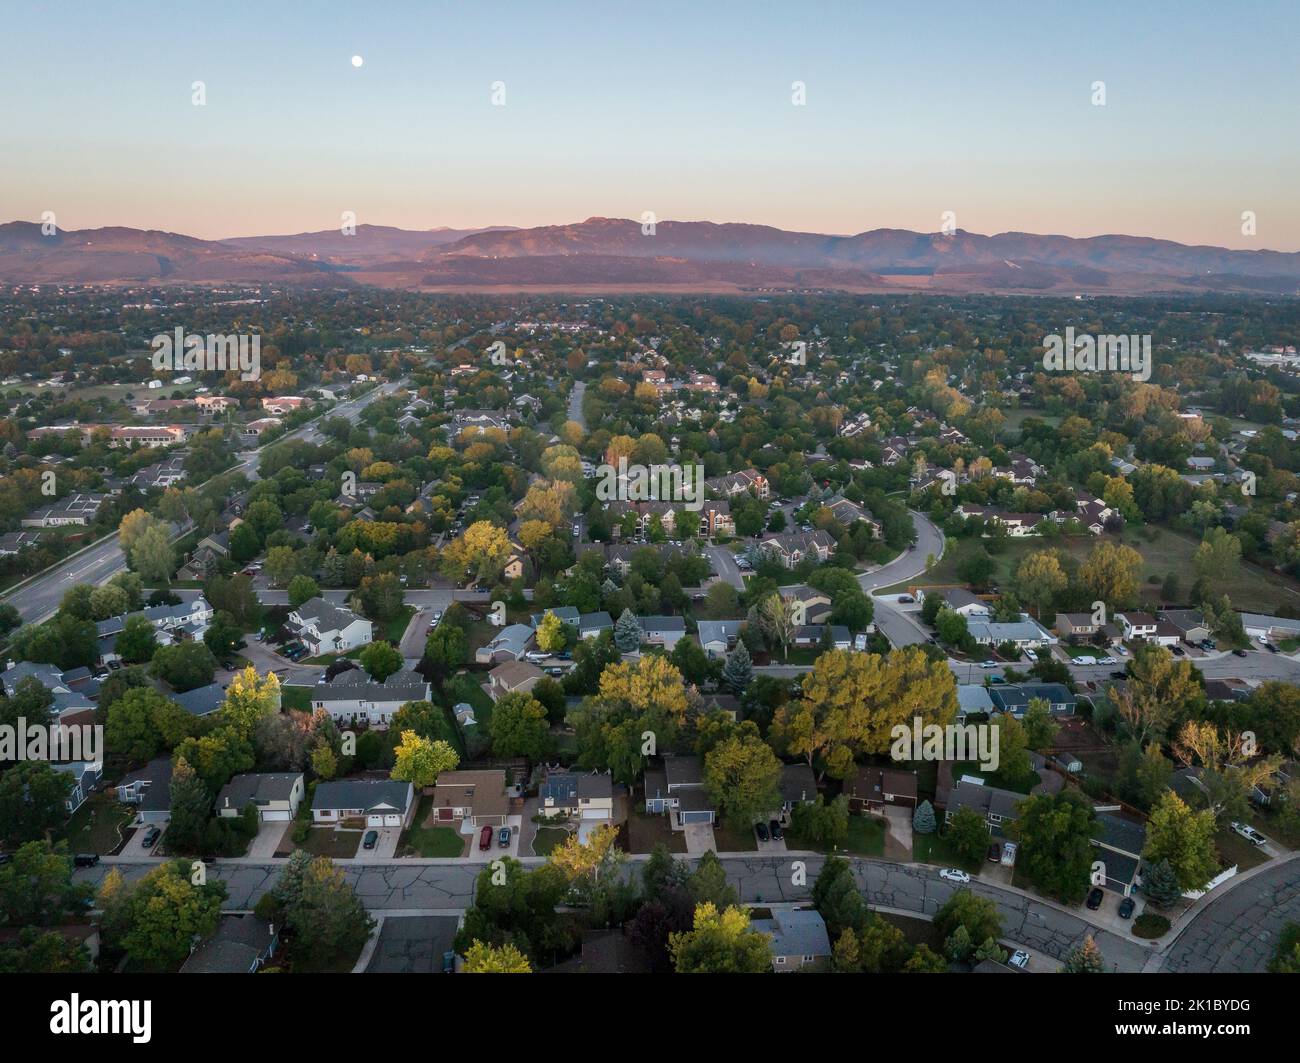 Amanecer de verano con luna llena sobre la zona residencial de Fort Collins y las estribaciones de las Montañas Rocosas en el norte de Colorado, vista aérea Foto de stock